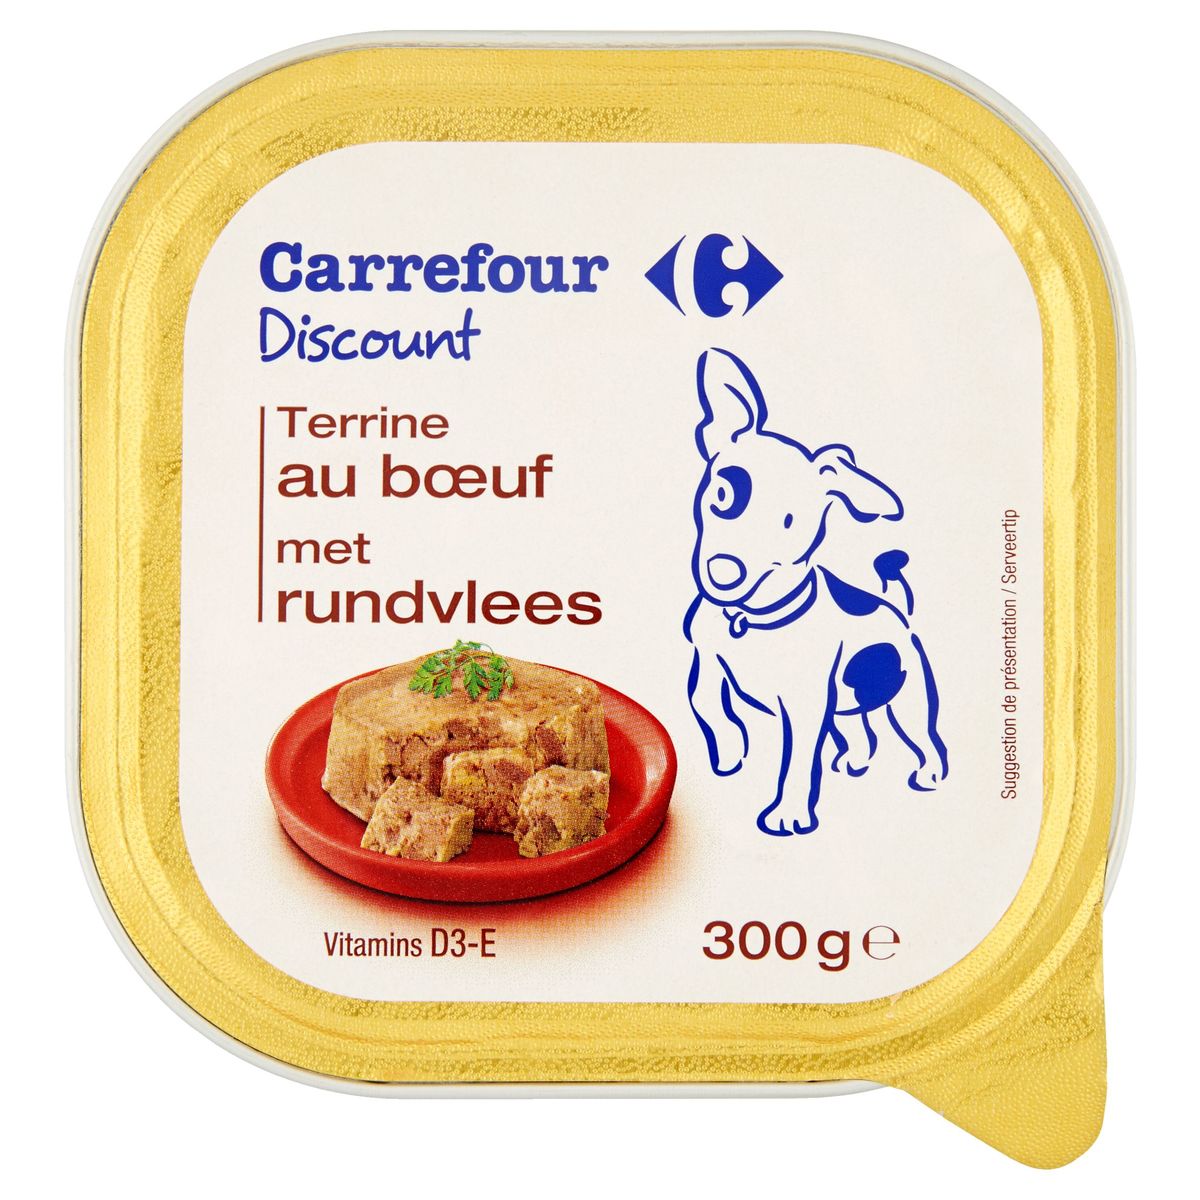 Carrefour Discount Terrine met rundvlees 300 g